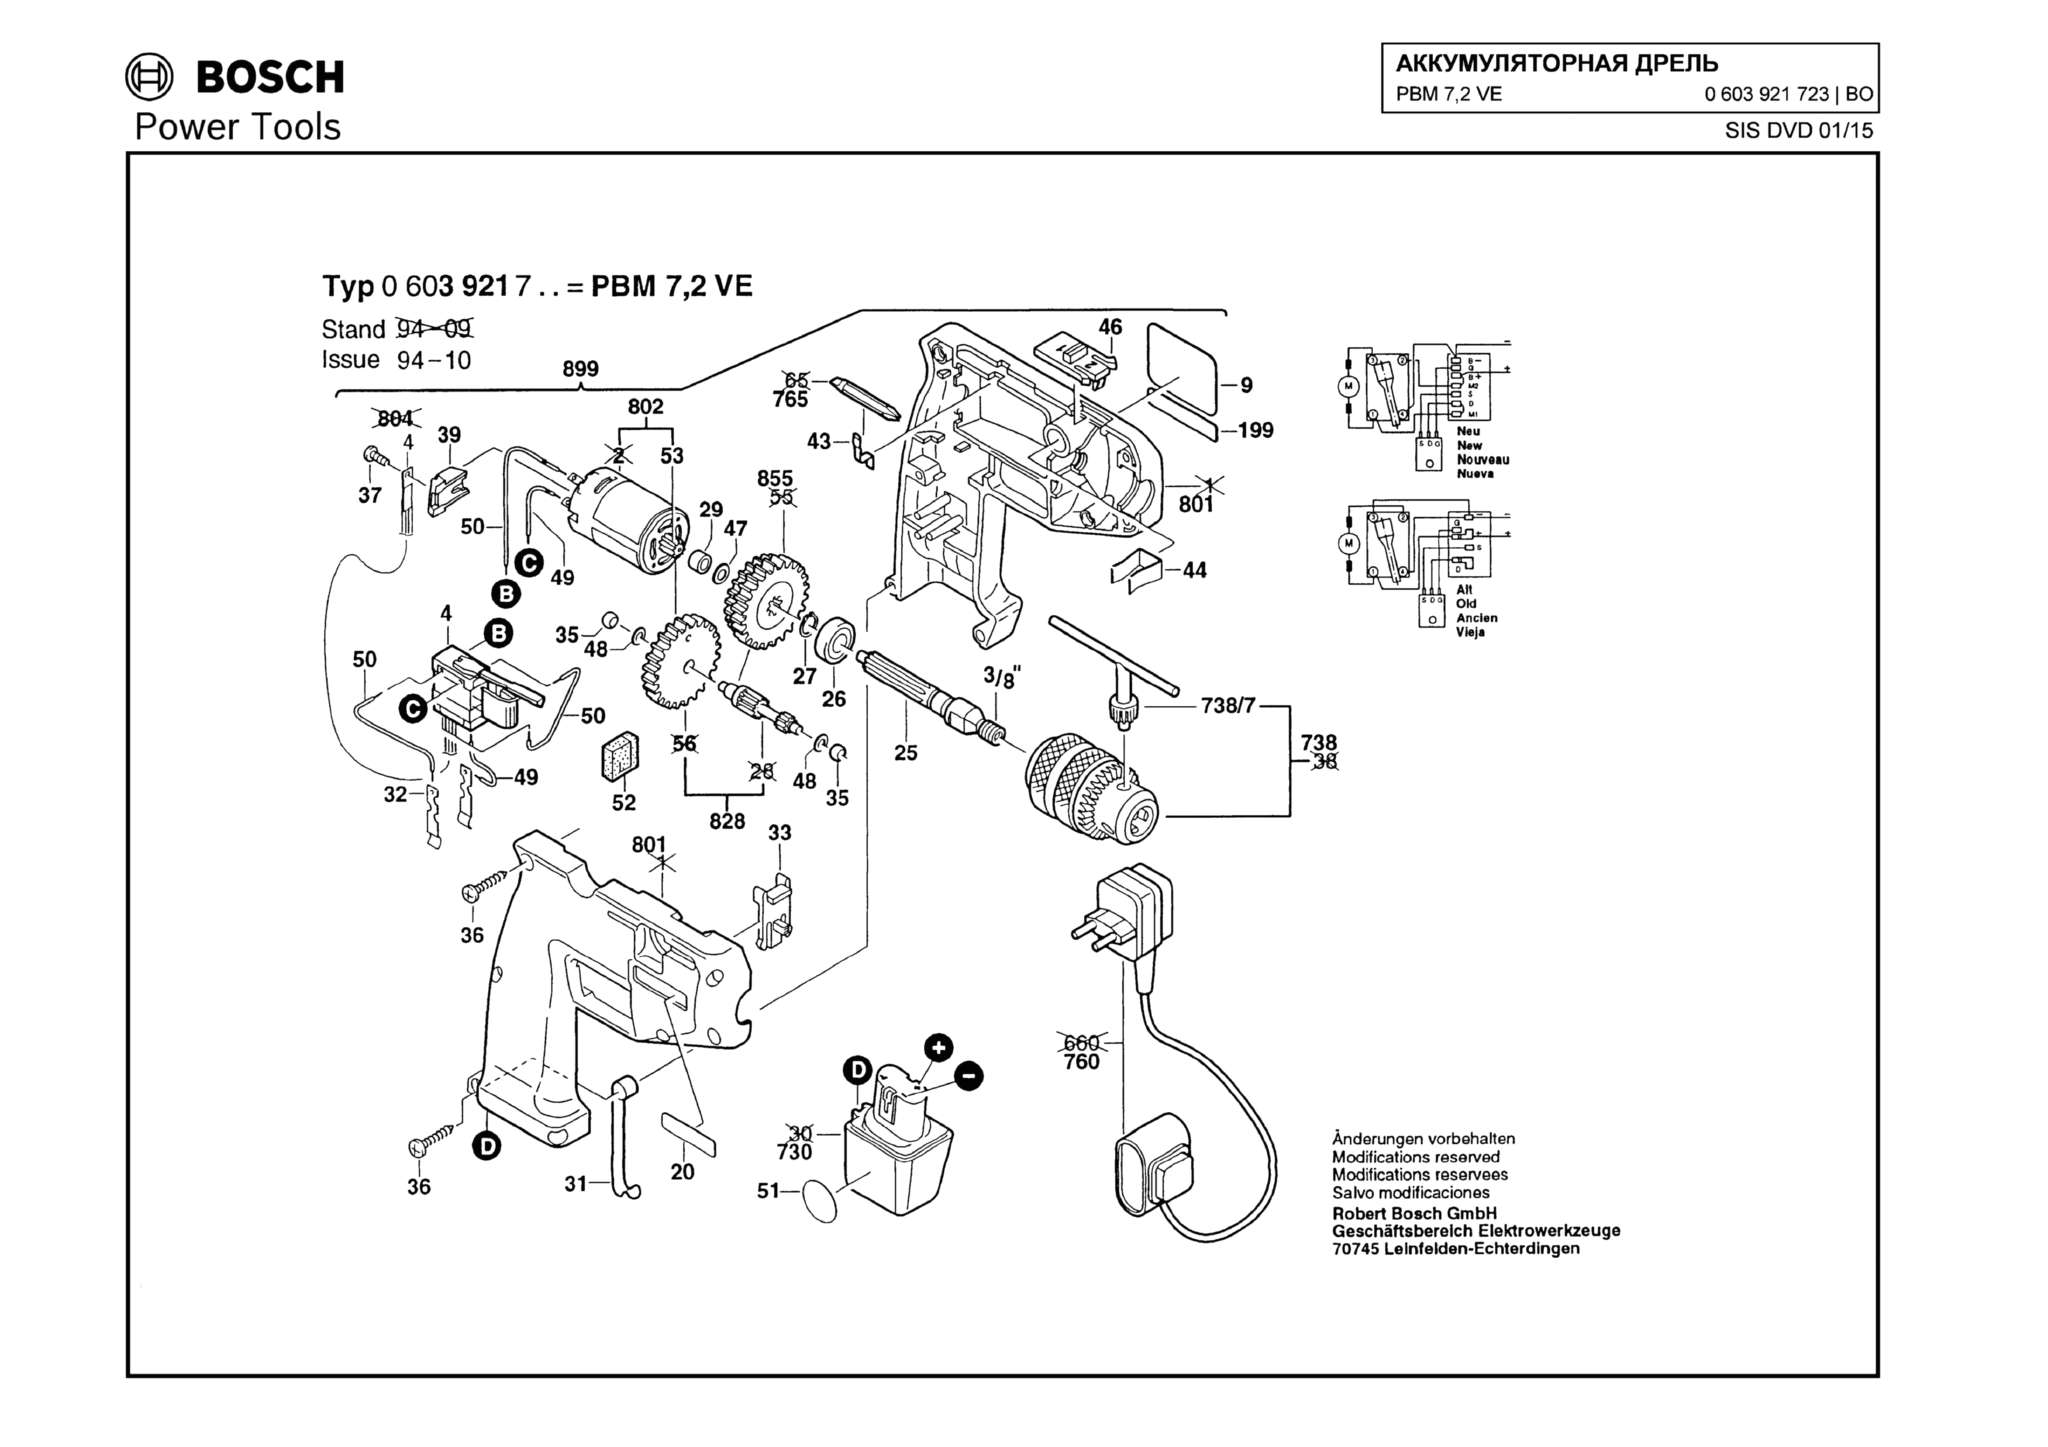 Запчасти, схема и деталировка Bosch PBM 7,2 VE (ТИП 0603921723)